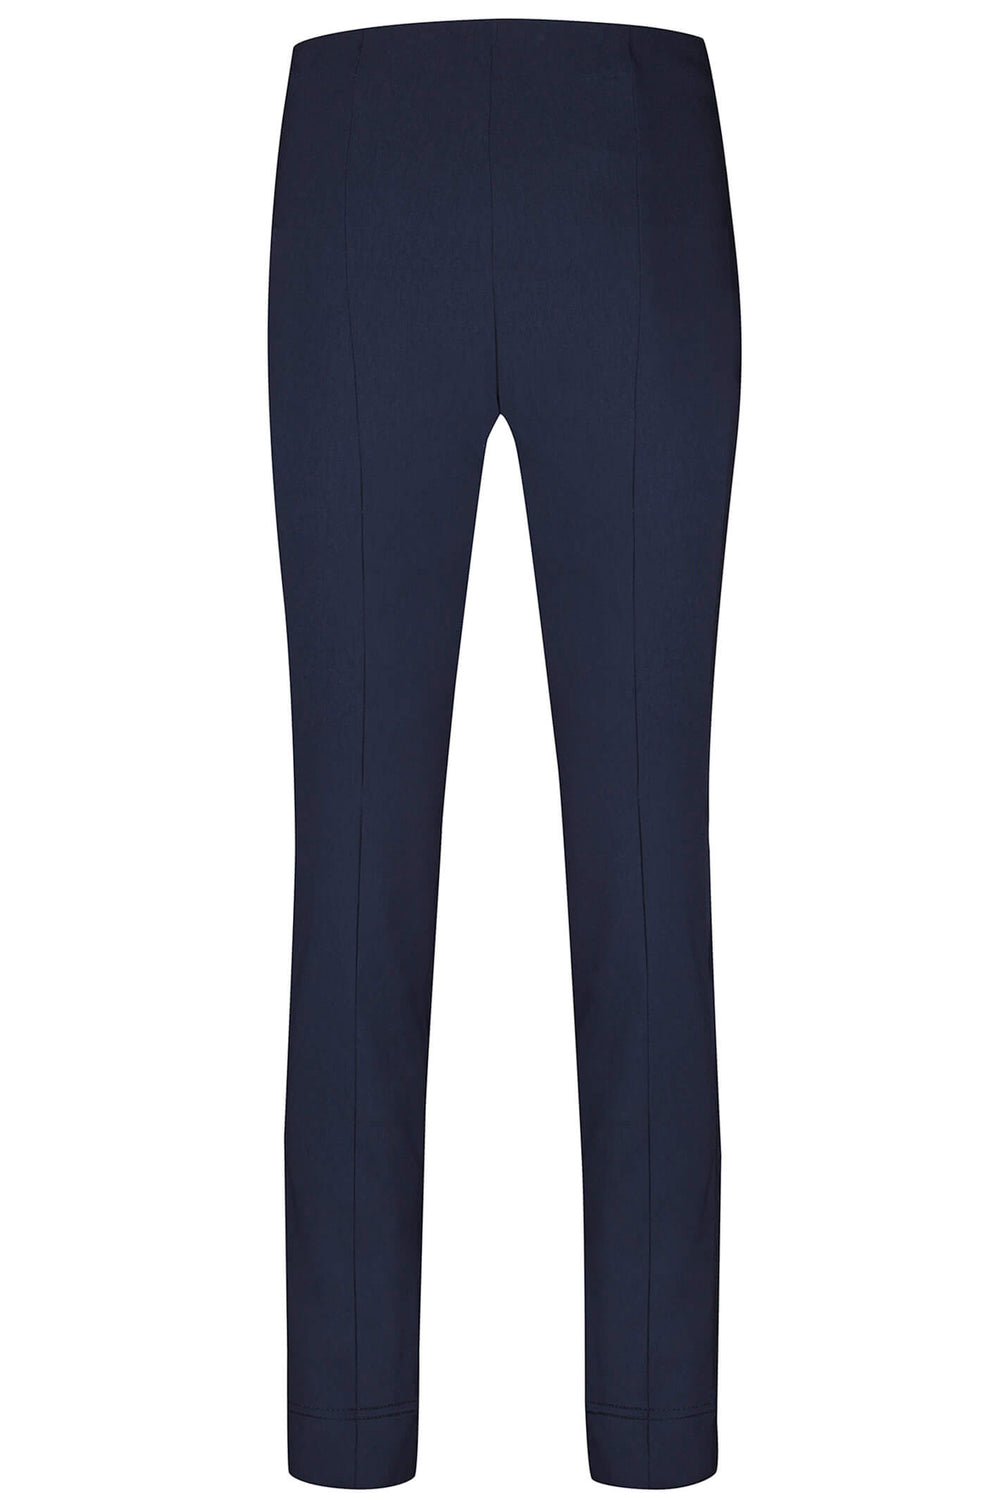 Robell 51673-5499-69 Rose Navy Full Length Slim Fit Trousers - Dotique